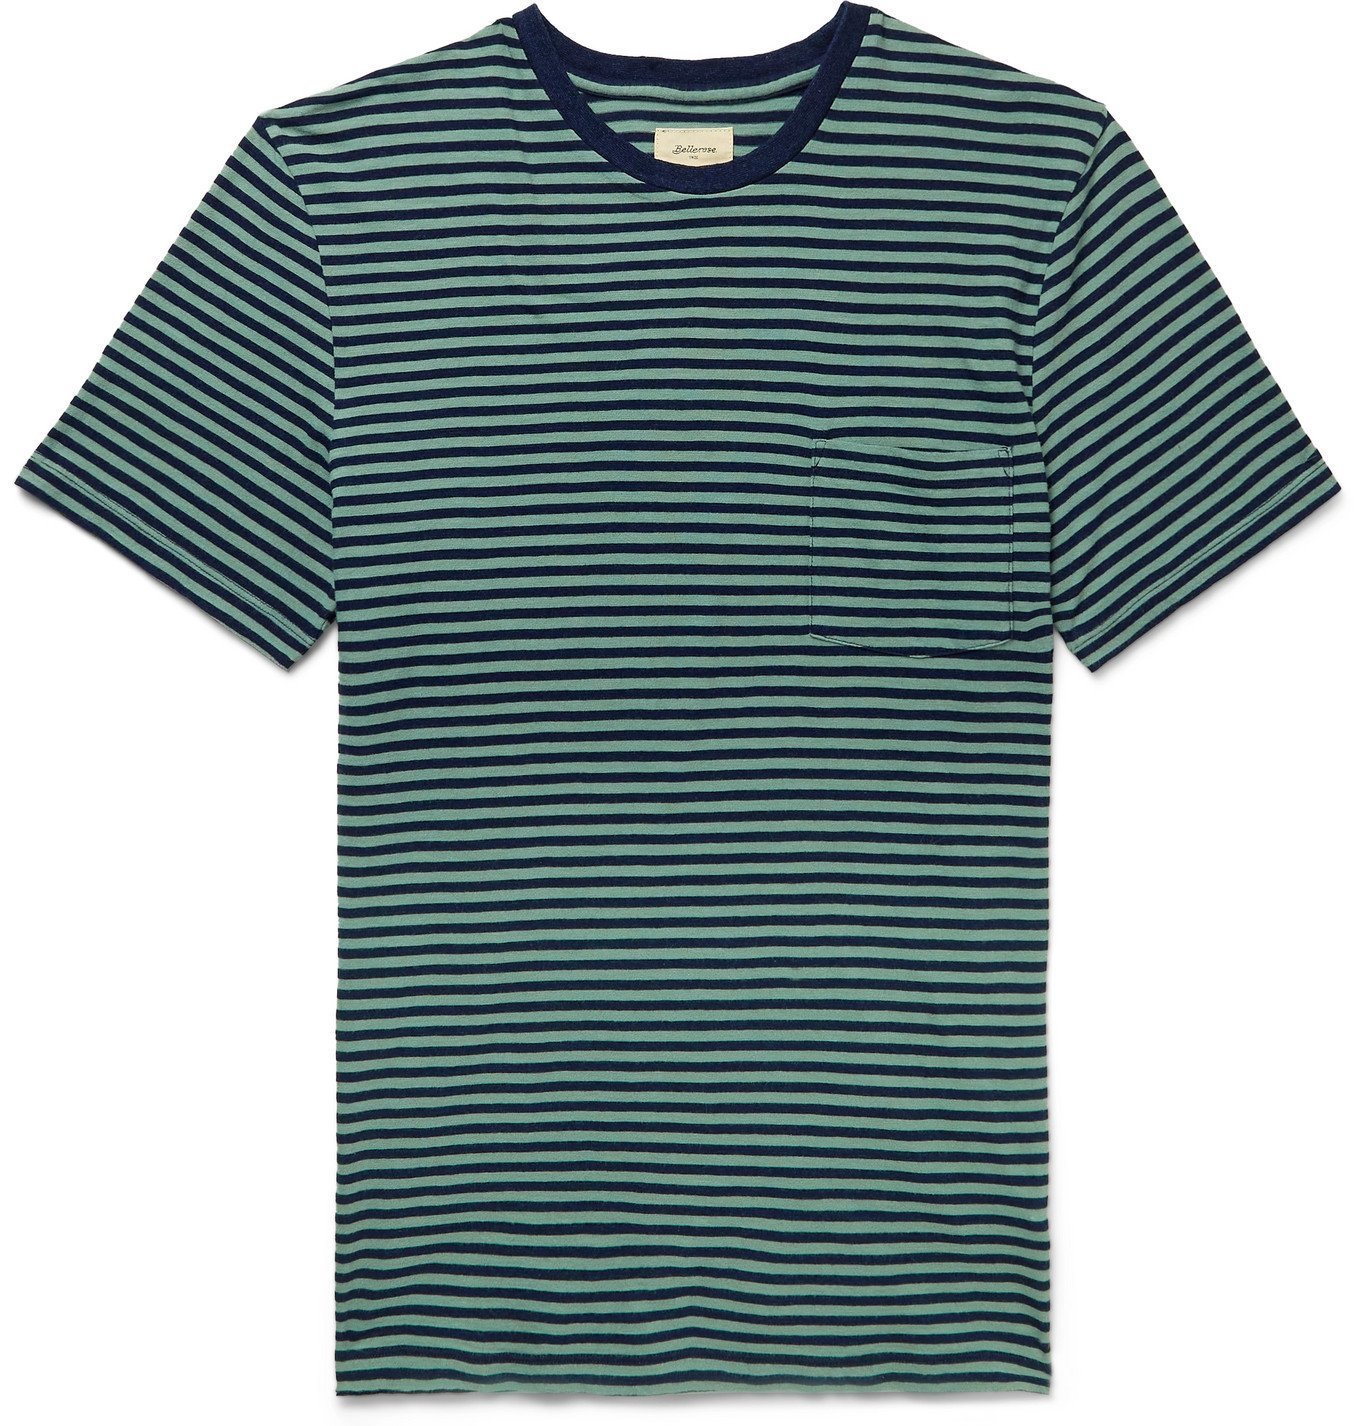 Bellerose - Striped Cotton-Jersey T-Shirt - Green Bellerose